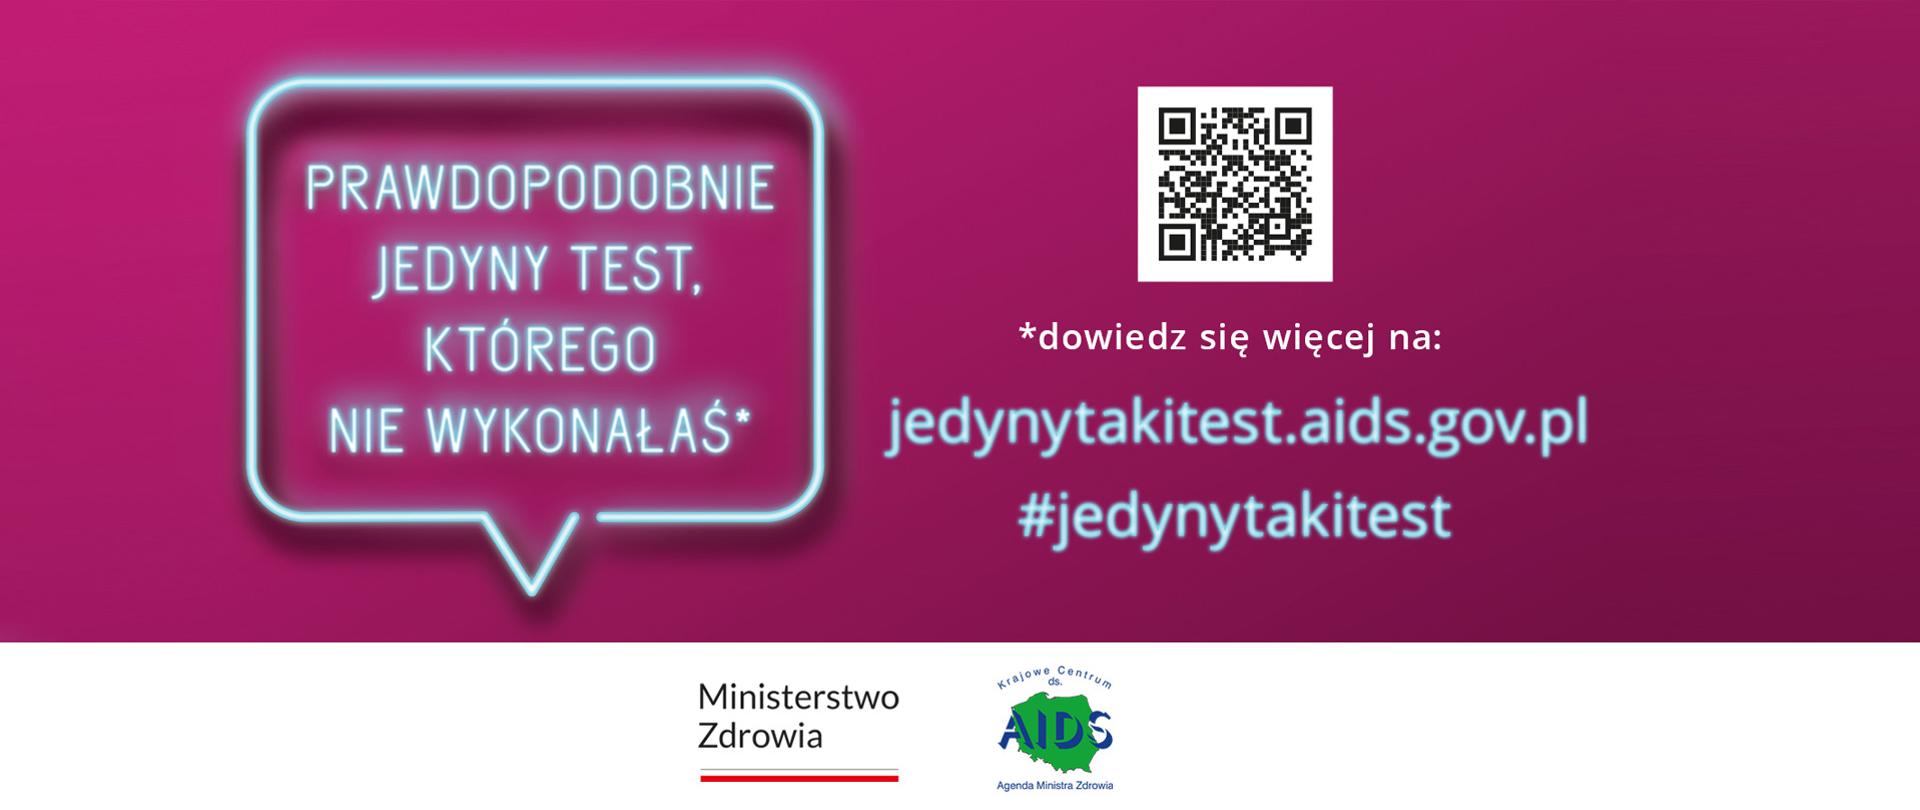 Grafika przedstawiająca neon z napisem: "Prawdopodobnie jedyny test, którego nie wykonałeś". Obok kod QR oraz informacja: Dowiedz się więcej na jedynytakitest.aids.gov.pl, #jedynytakitest. Logo Ministerstwa Zdrowia oraz Krajowego Centrum ds.AIDS.